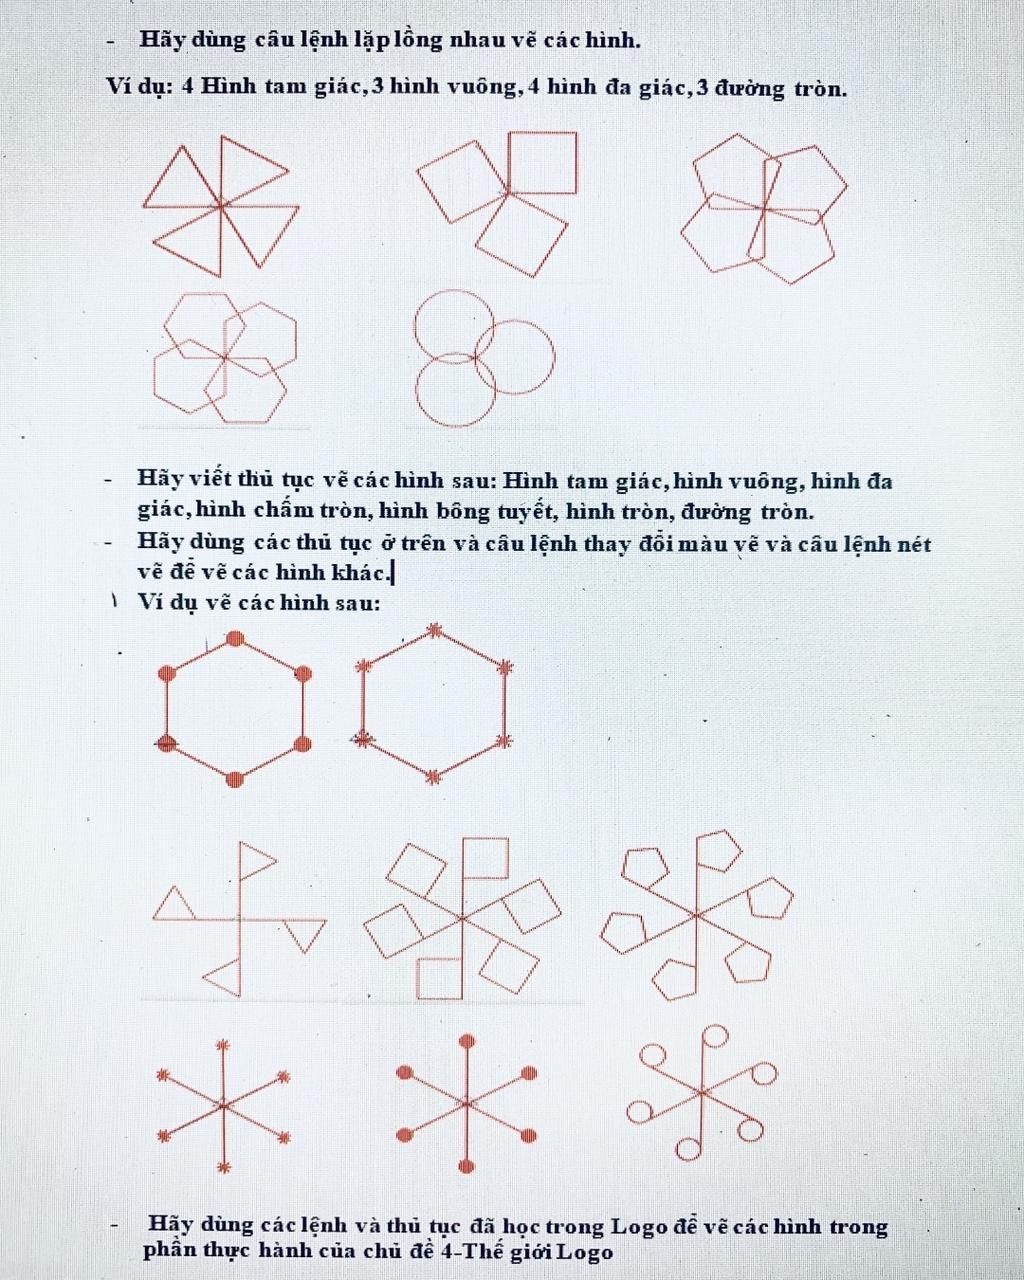 Hãy dùng câu lệnh lặp lồng nhau vẽ các hình. Ví dụ: 4 Hình tam ...